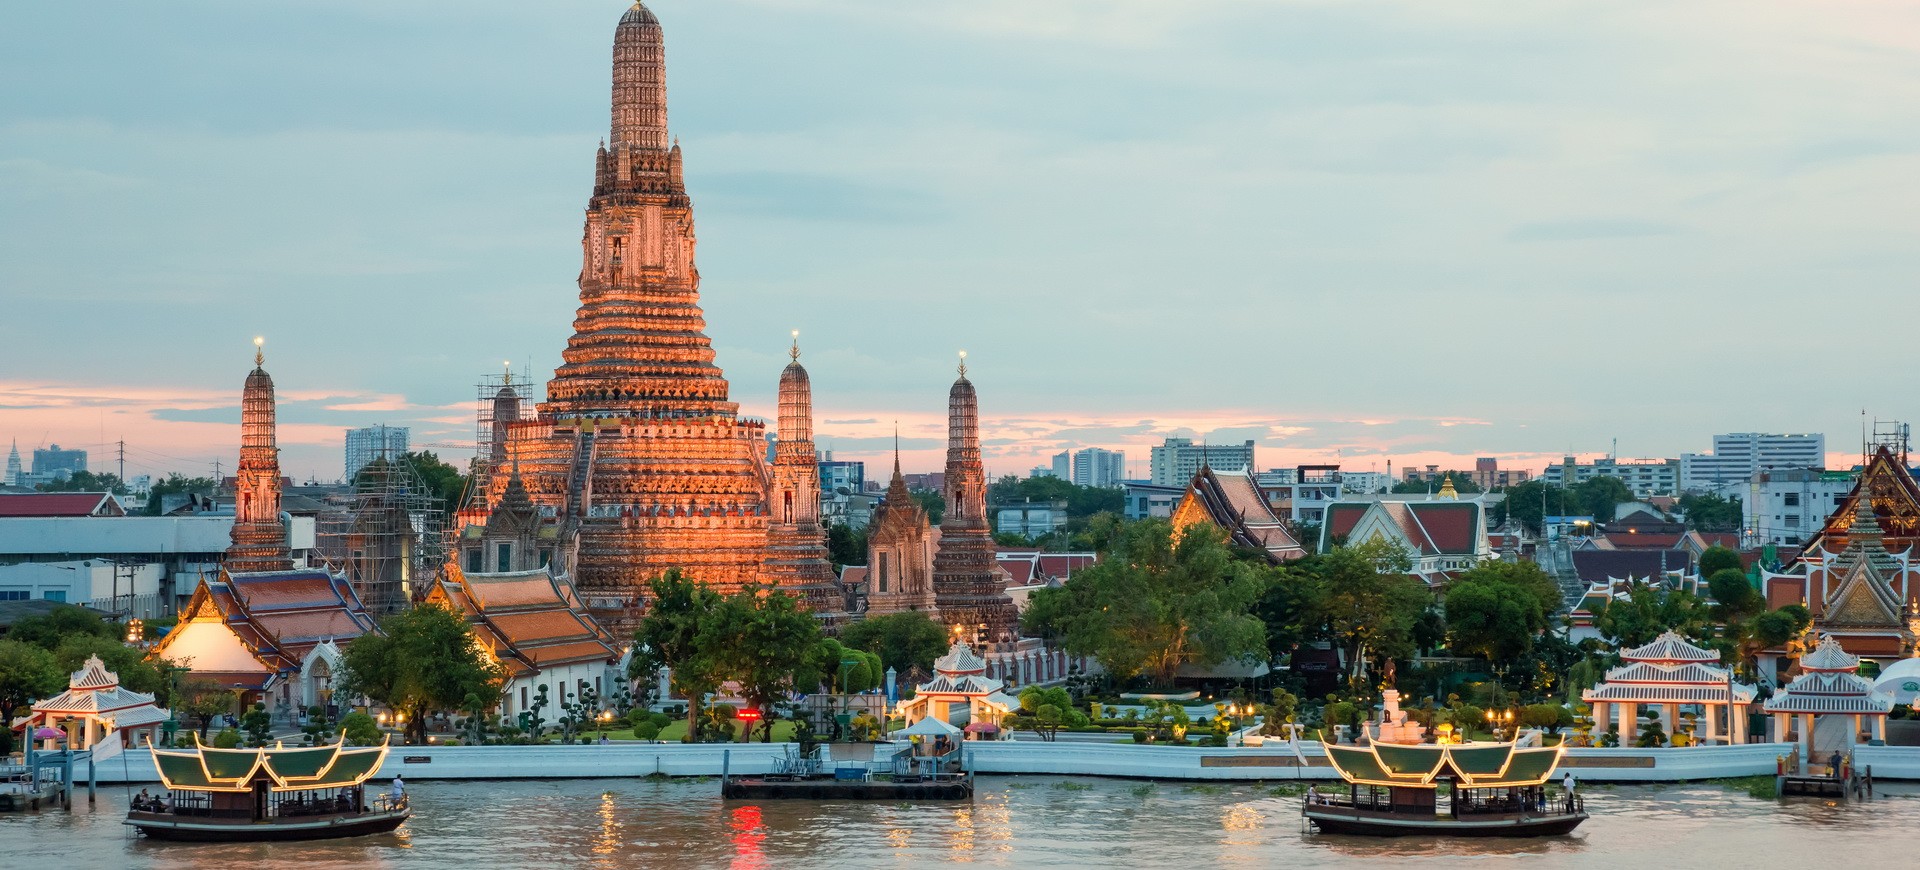 Thailande Bangkok Wat Arun et croisière sur la rivière